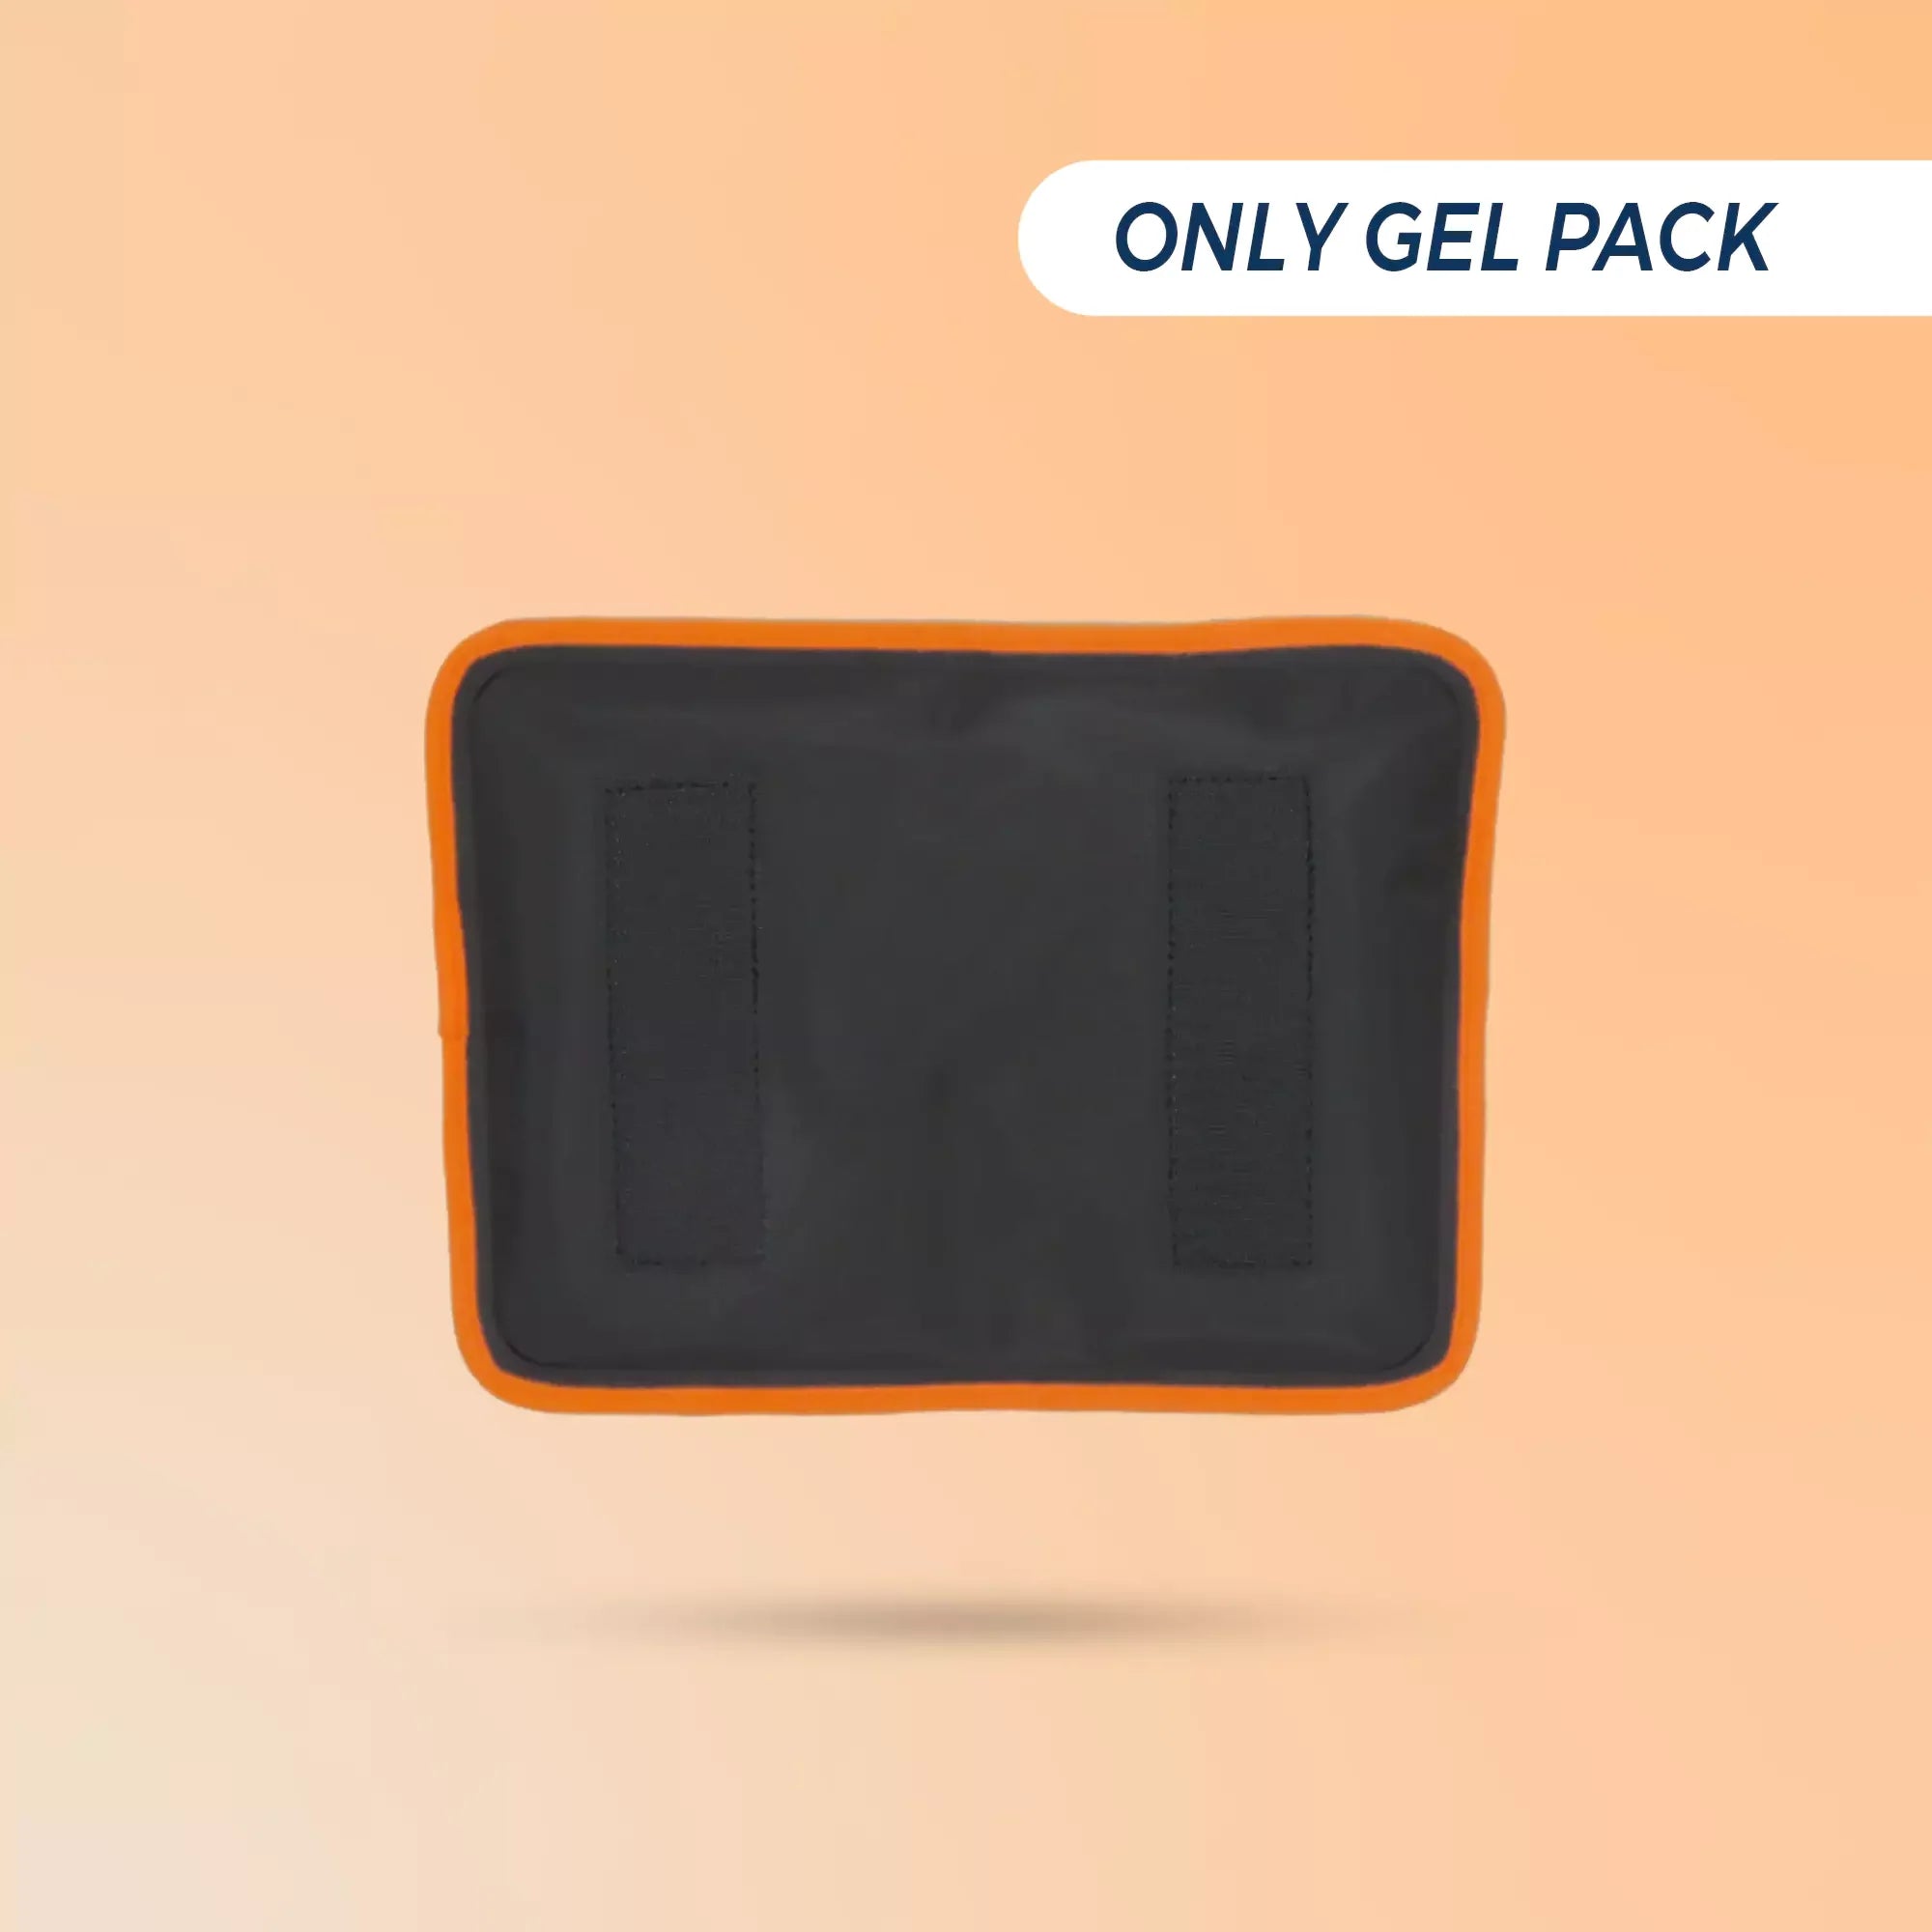 Sorgen® Cold Compression Gel Packs